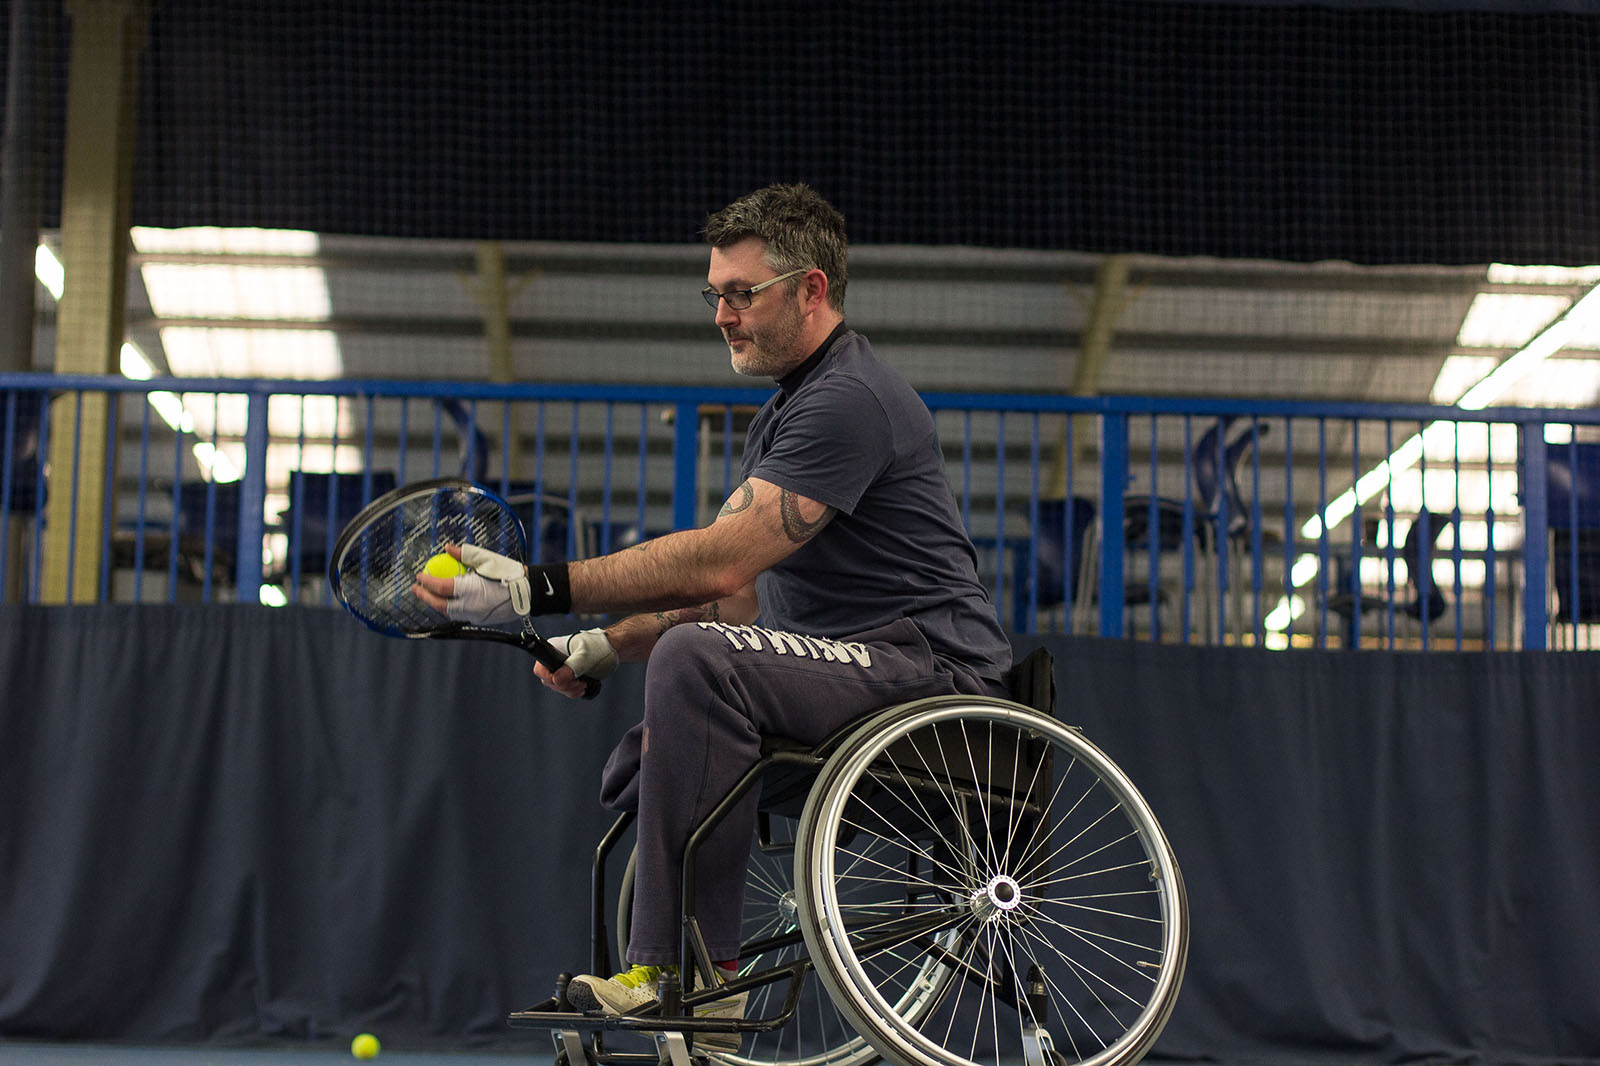 man in a wheelchair serving a tennis ball